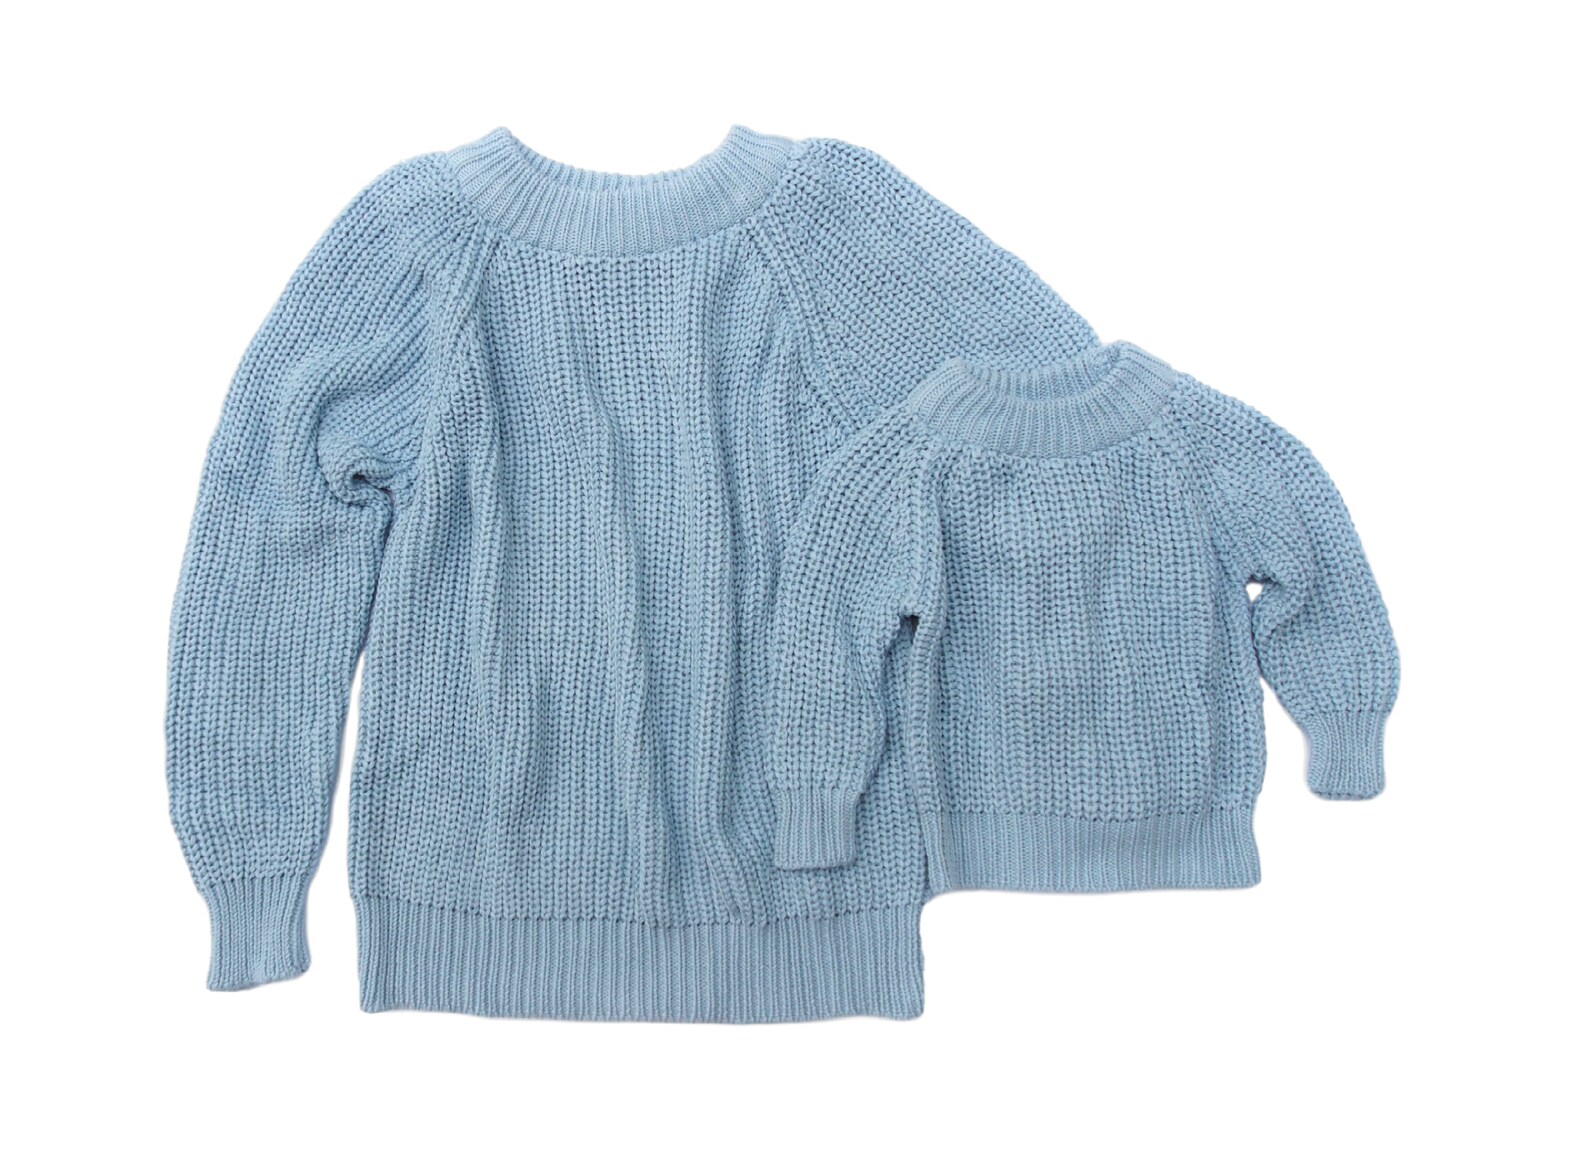 Blue knitted Jumper Knitwear Baby Jumper Kids Knitwear | Etsy